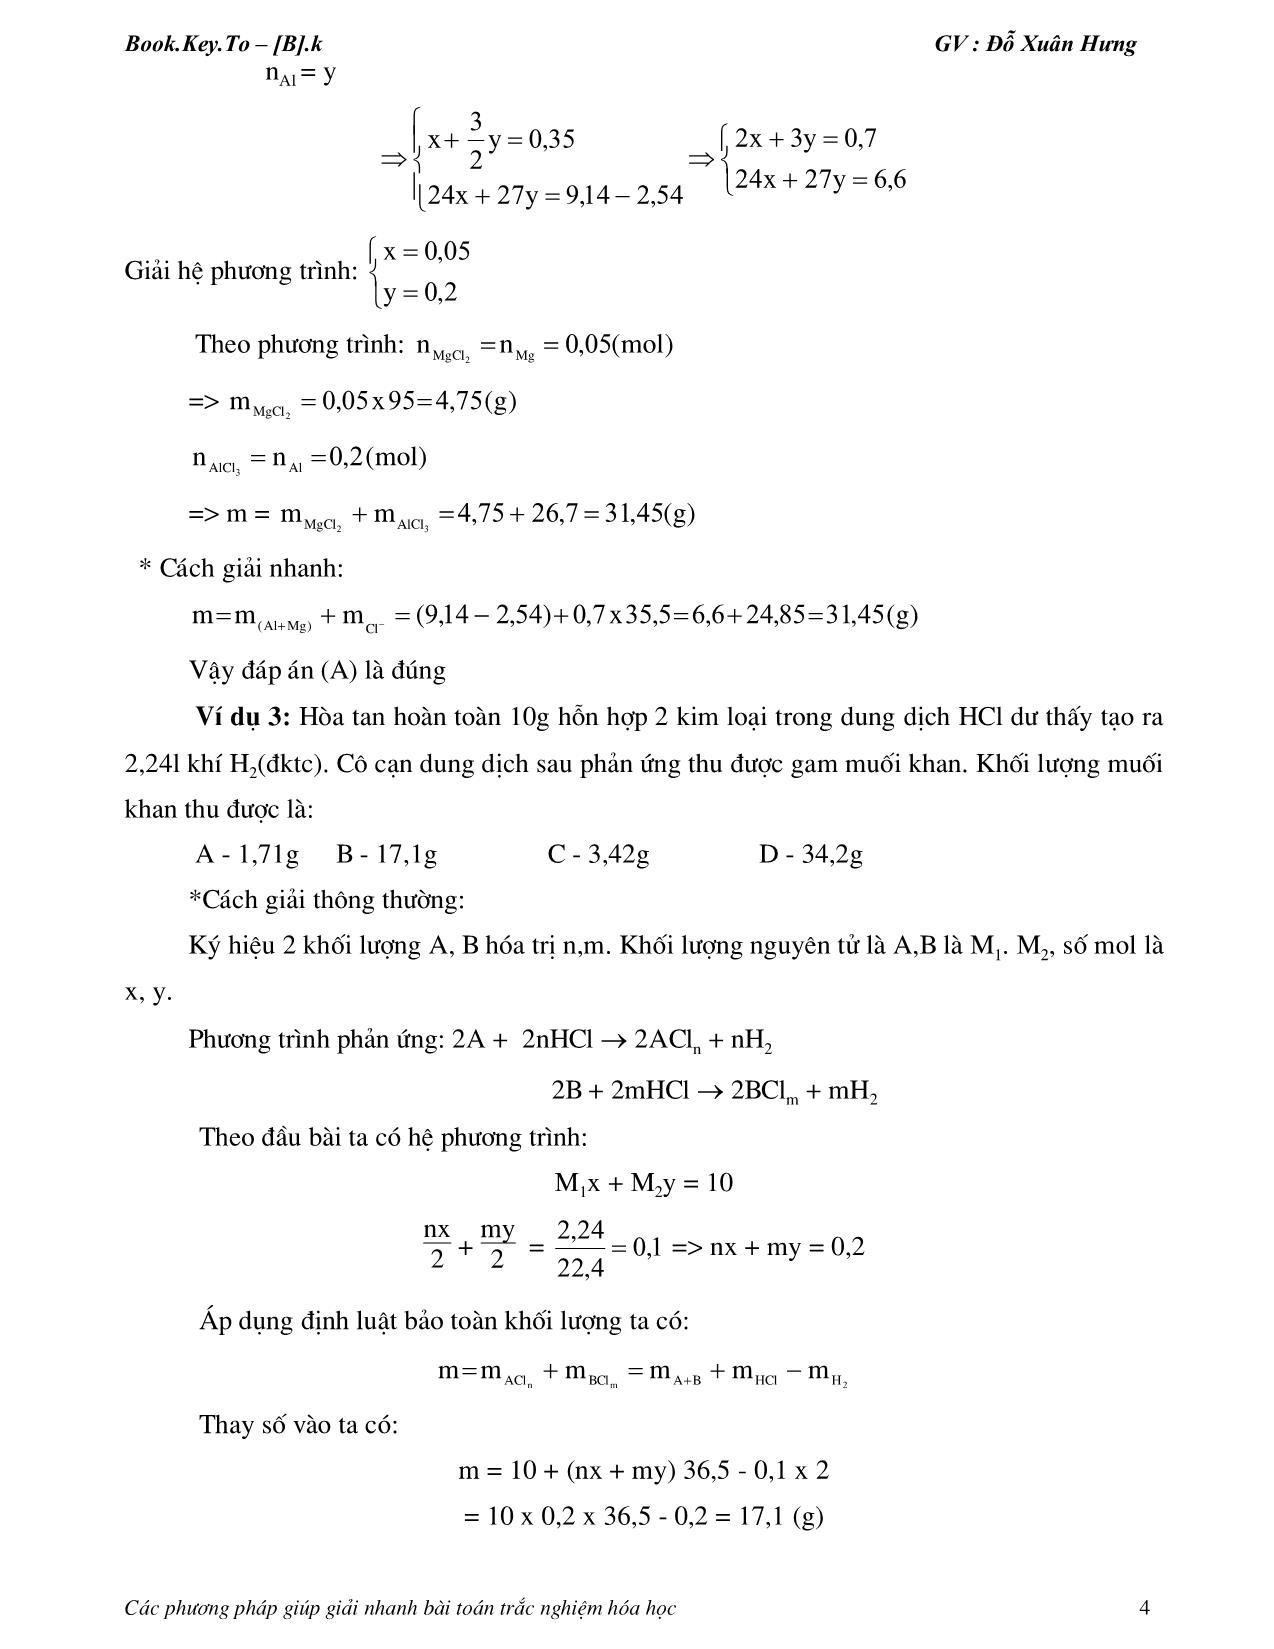 Các phương pháp giúp giải nhanh bài toán hóa học trang 4